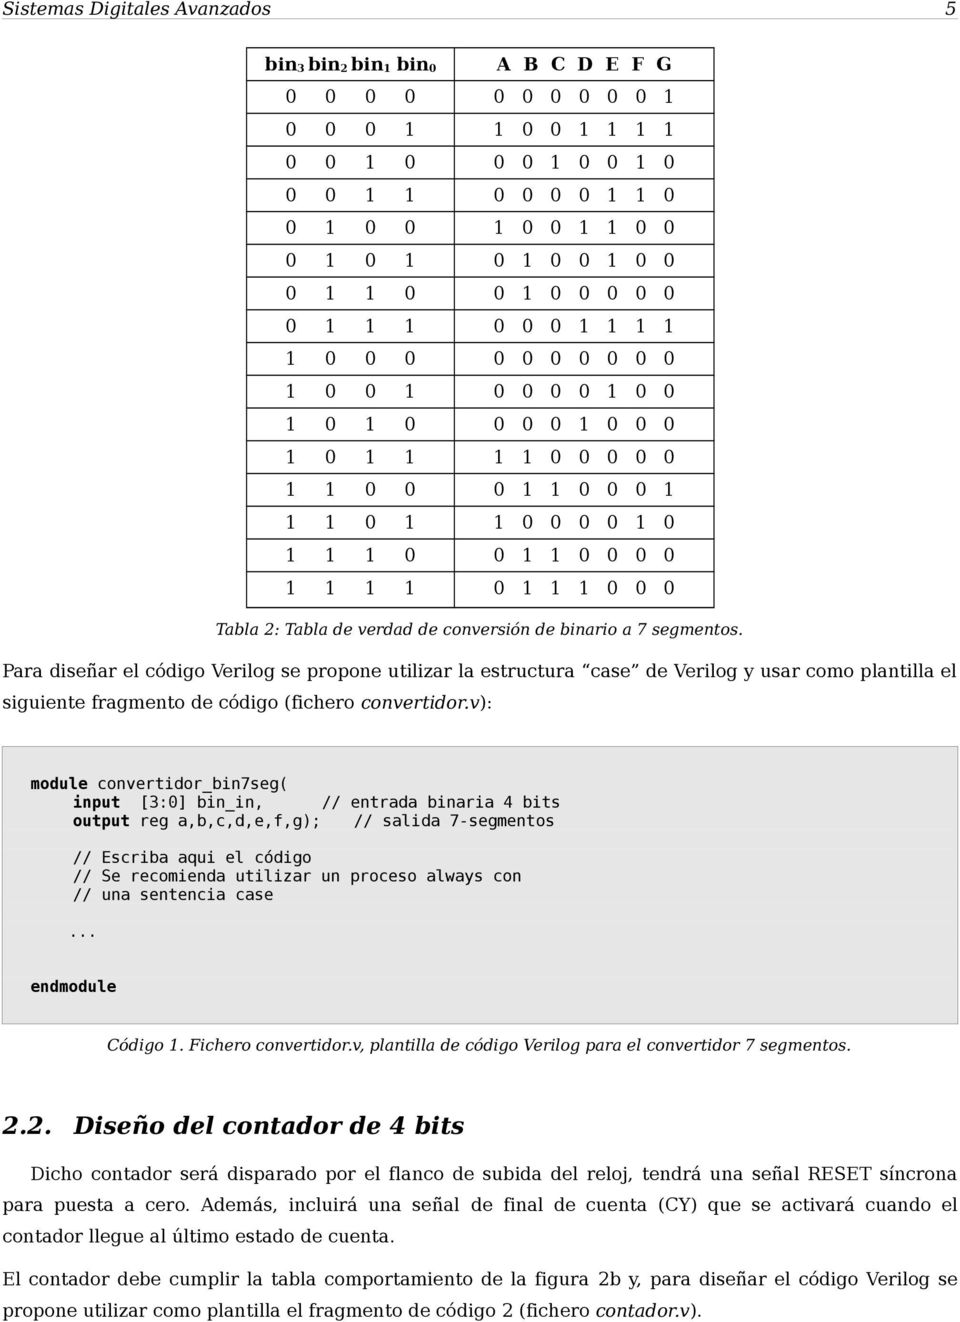 1 1 1 1 0 1 1 1 0 0 0 Tabla 2: Tabla de verdad de conversión de binario a 7 segmentos.